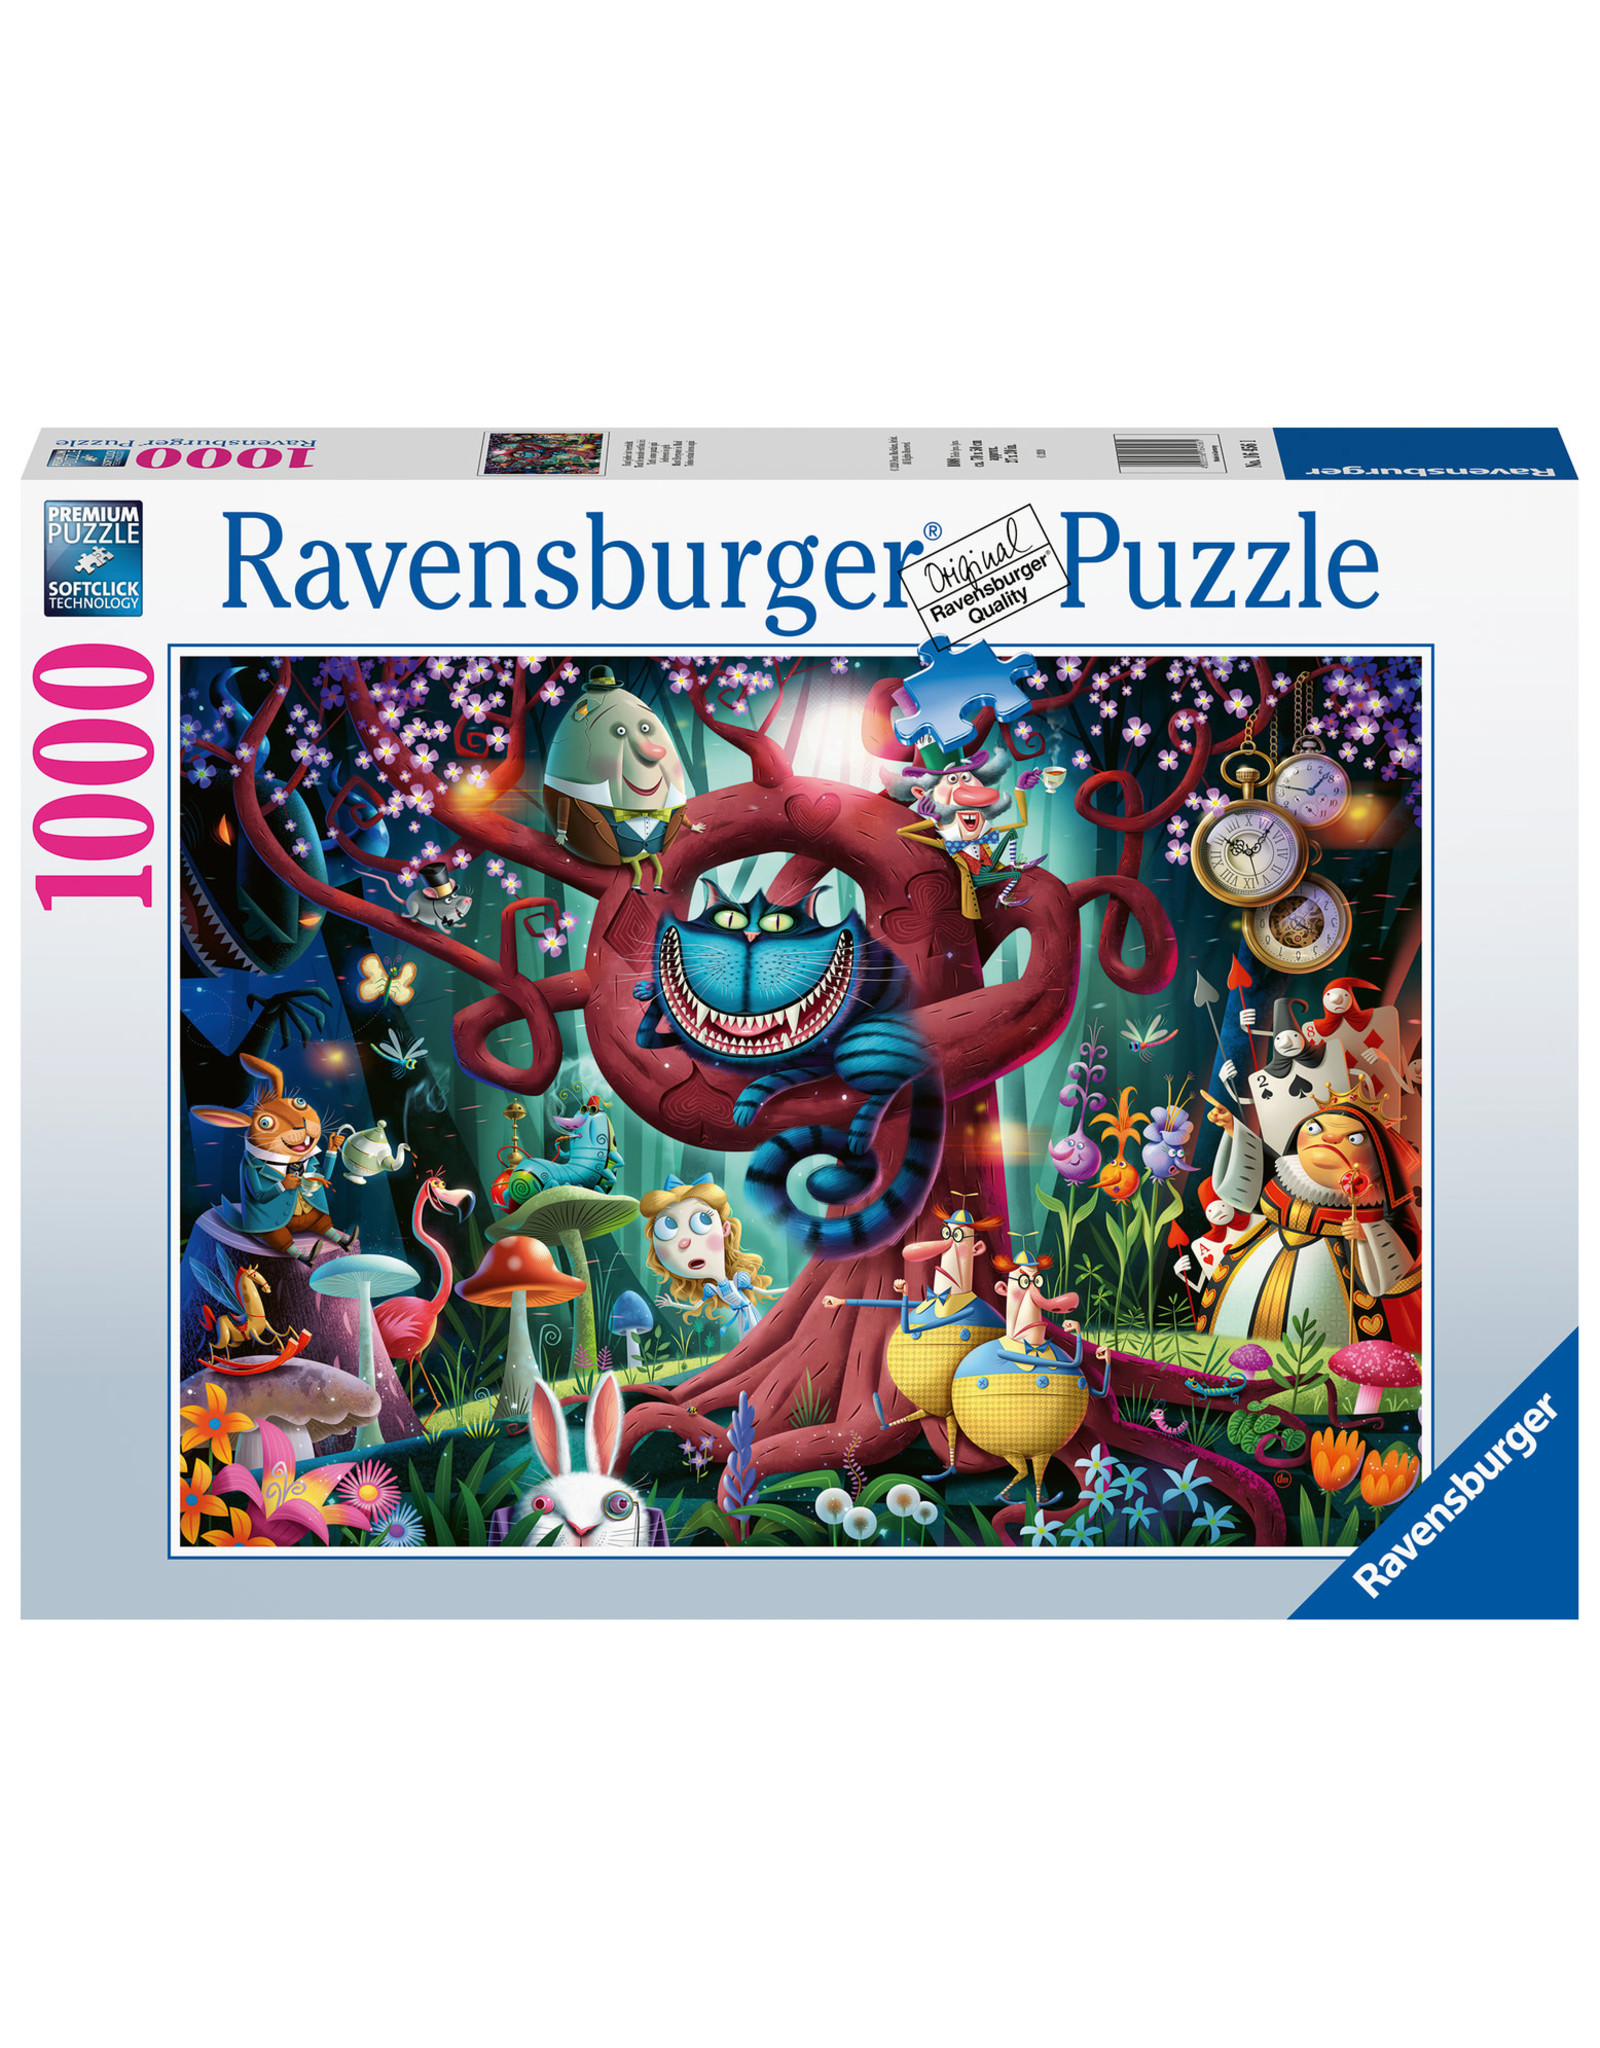 Smaak fusie makkelijk te gebruiken Ravensburger puzzel Iedereen is gek 1000 stukjes Almost Everyone is Mad  (Alice in Wonderland) - Marja's Shop